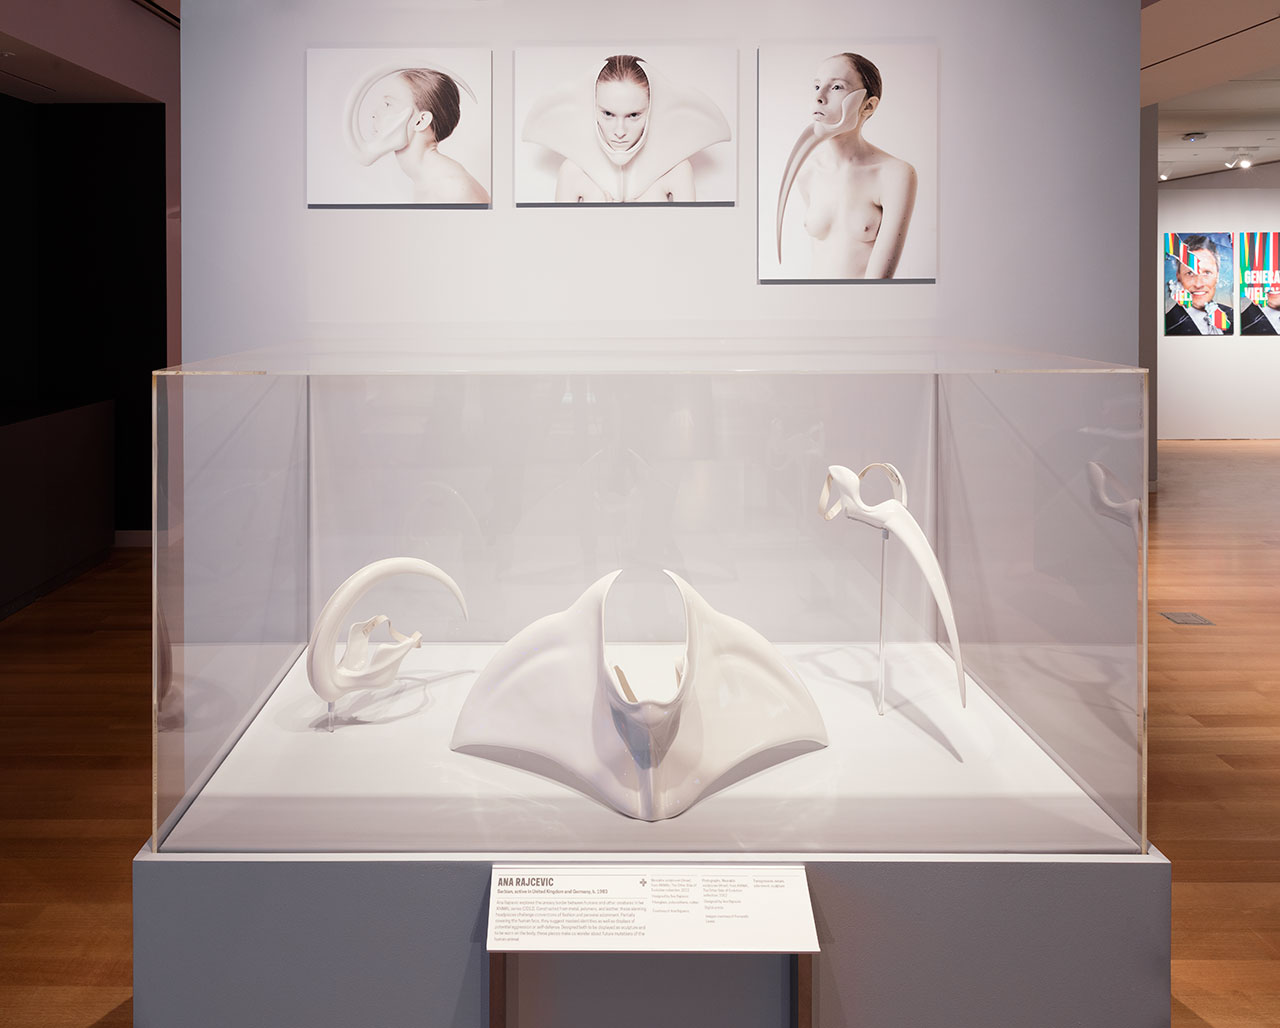 Installation view of "Beauty—Cooper Hewitt Design Triennial." Photo by Matt Flynn © 2016 Cooper Hewitt, Smithsonian Design Museum.